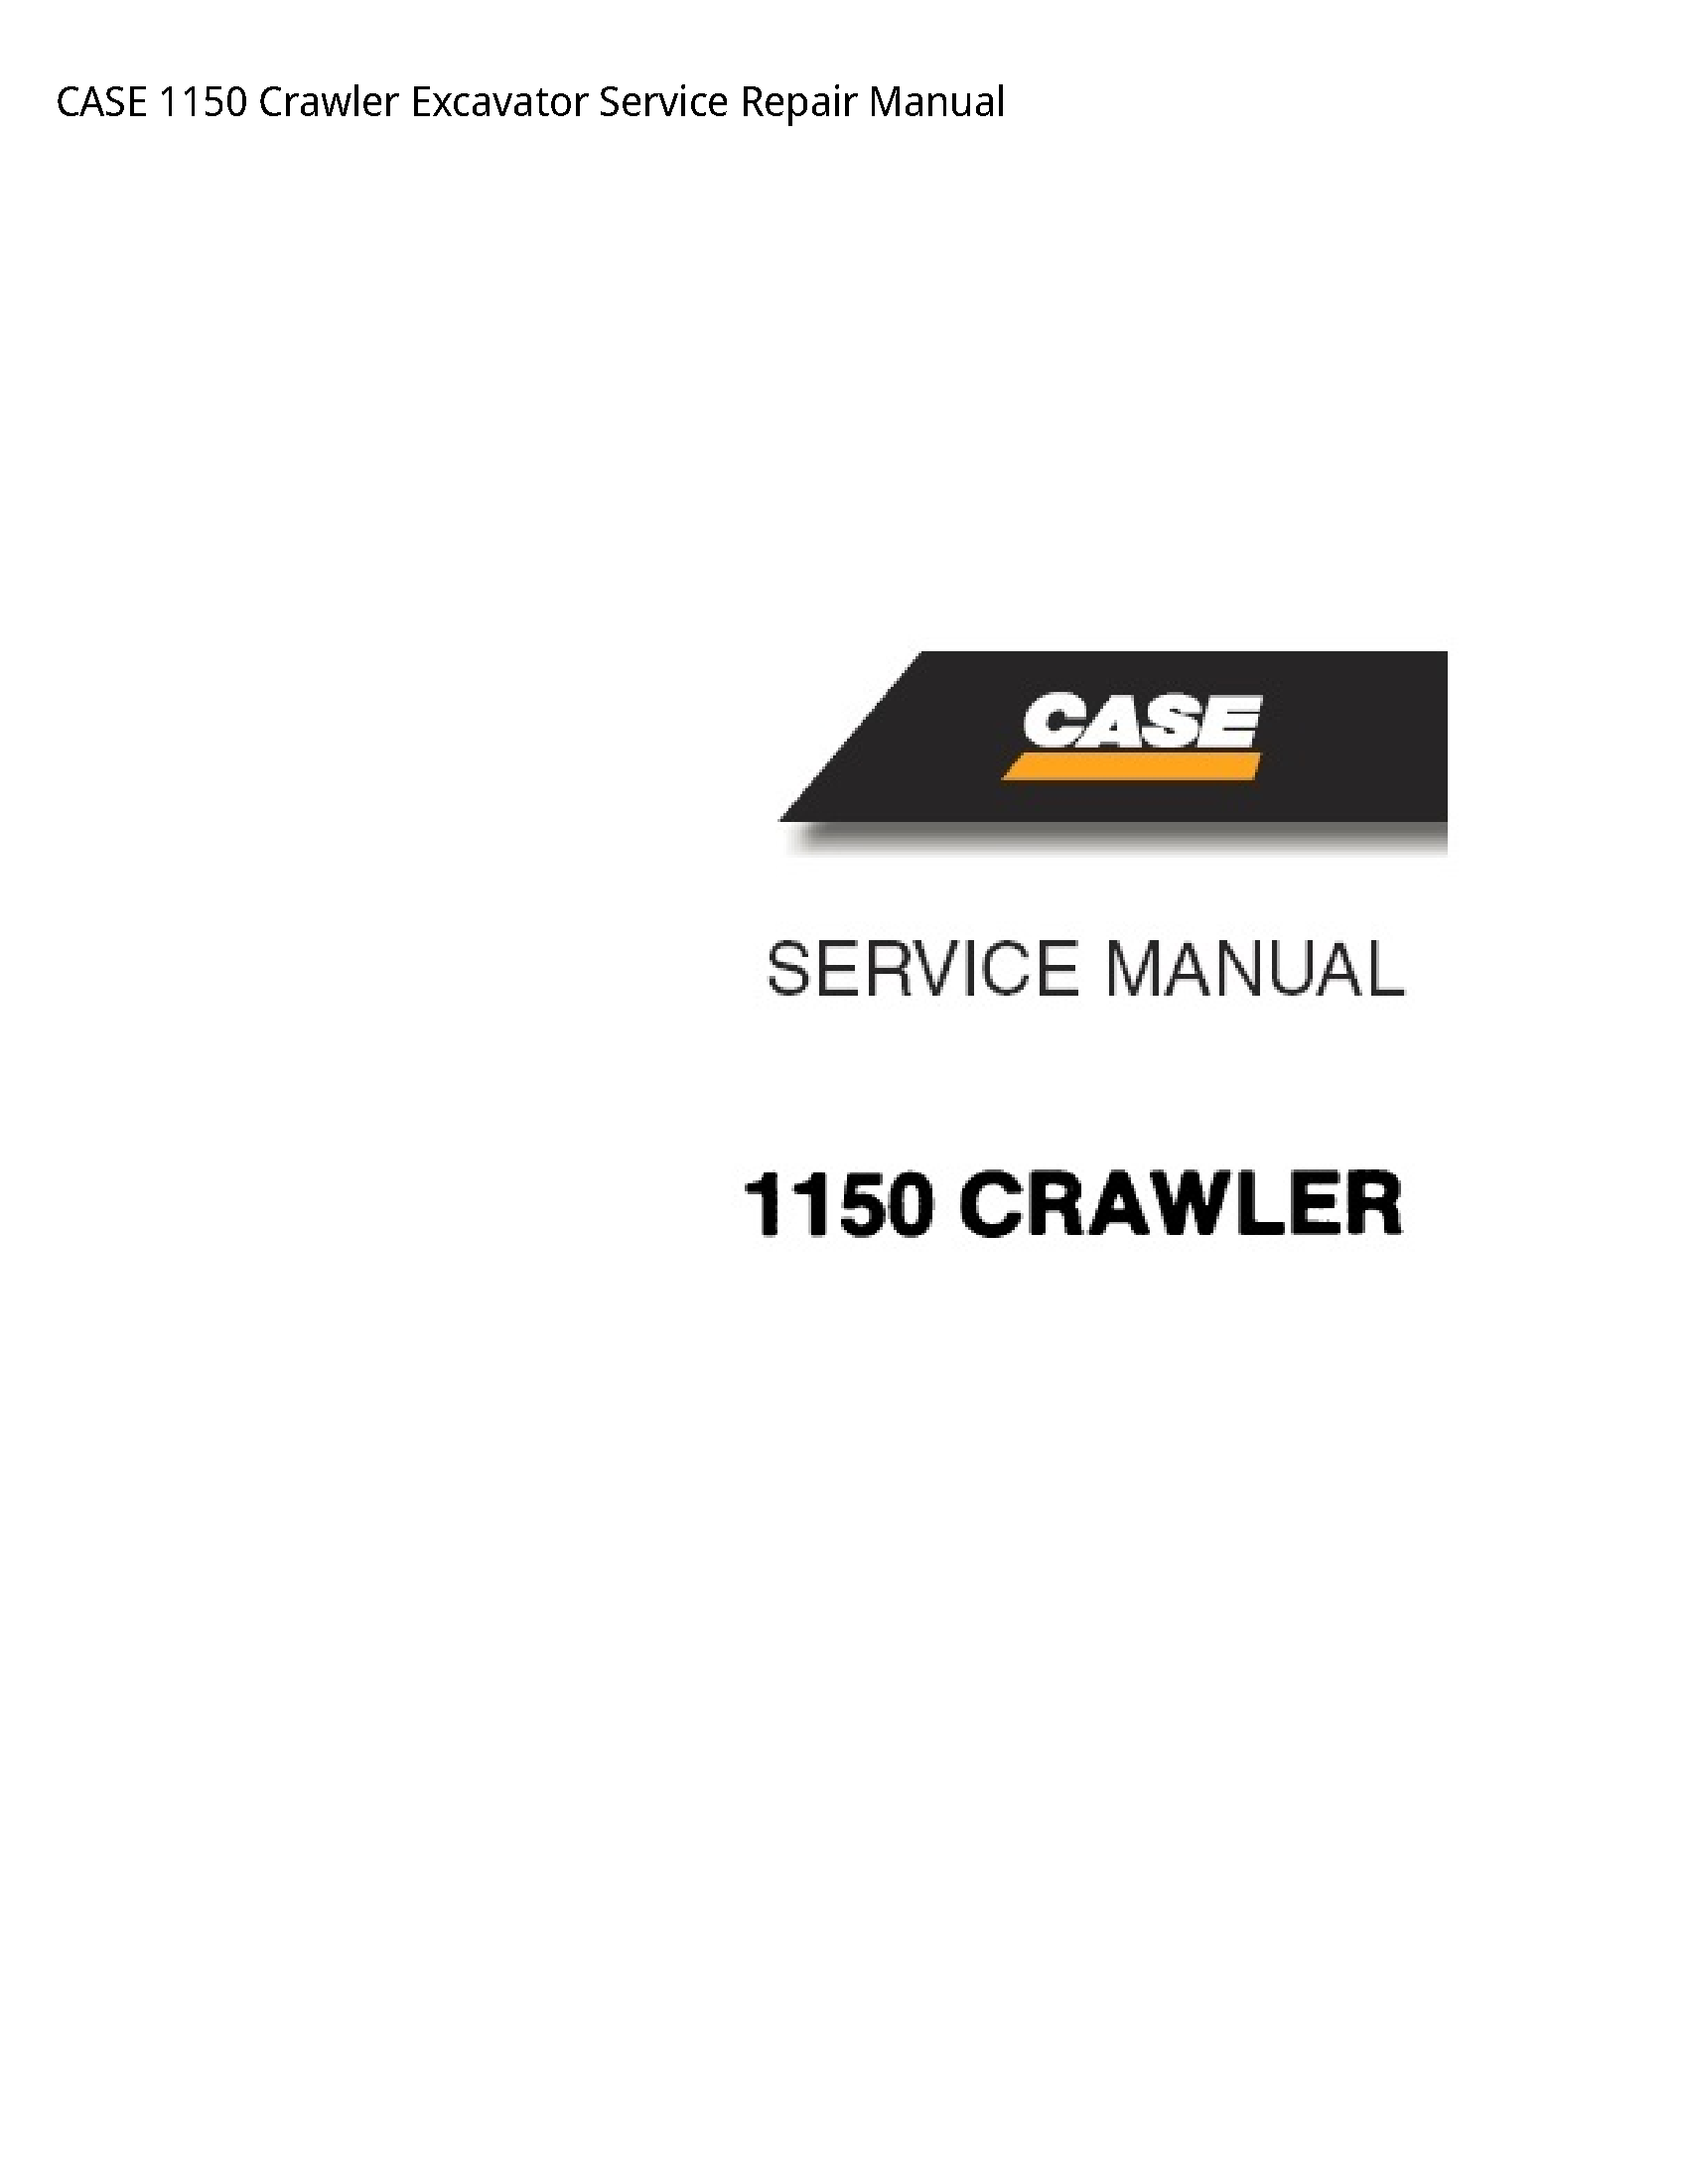 Case/Case IH 1150 Crawler Excavator manual